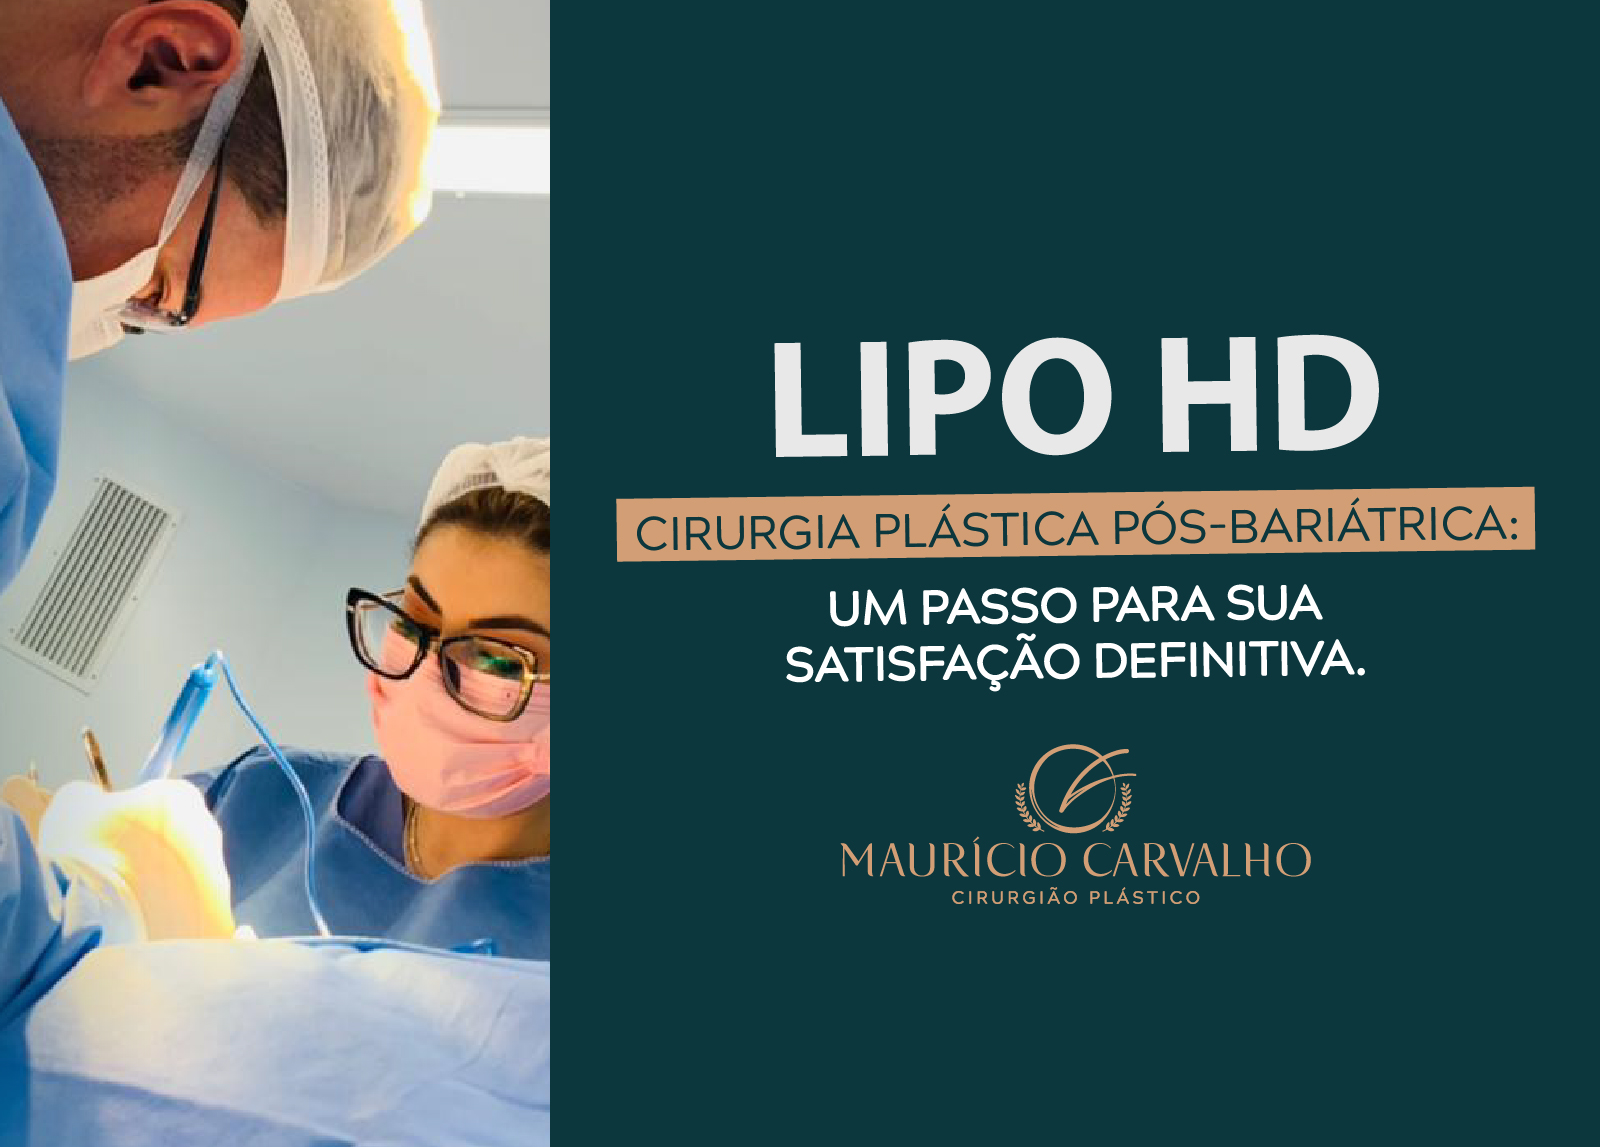 Elimine a cicatriz de cesárea com abdominoplastia – Maurício Carvalho